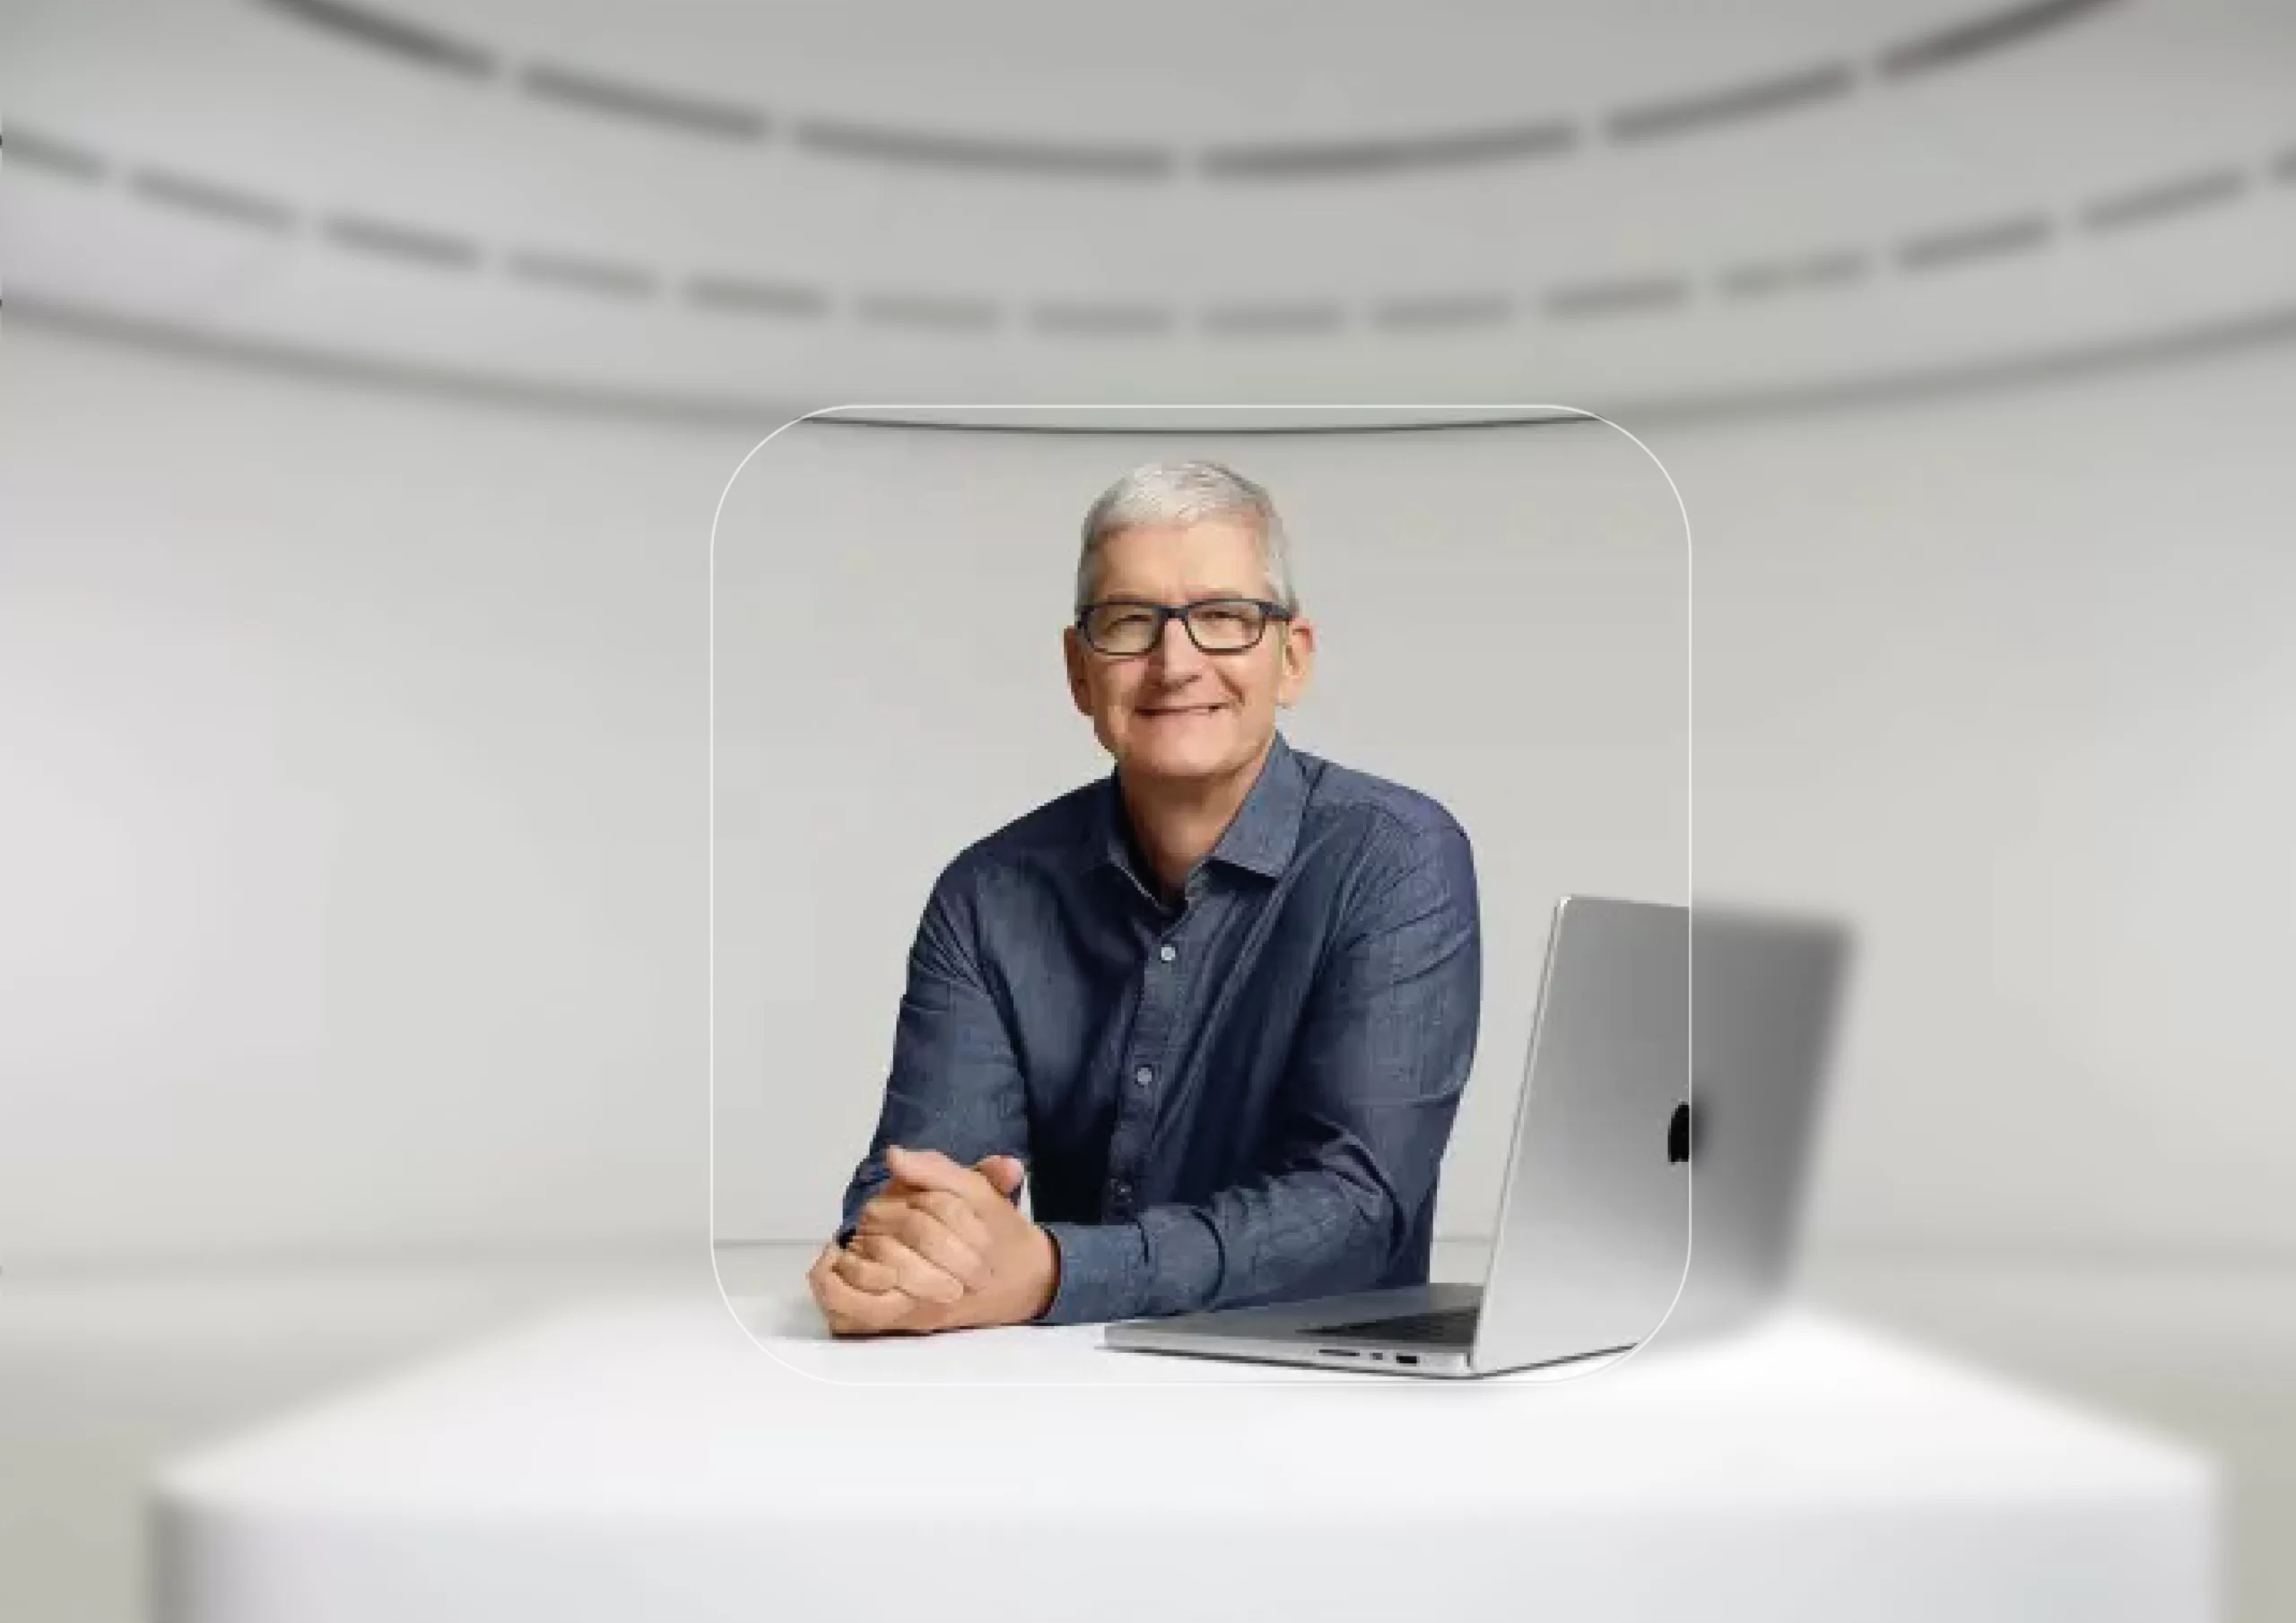 تیم کوک مدیرعامل فعلی شرکت اپل/Apple است و سابقه کار کردن در شرکت آی بی ام/Ibm را نیز دارد و از معاونین استیو جابز/steve jobs بوده است.